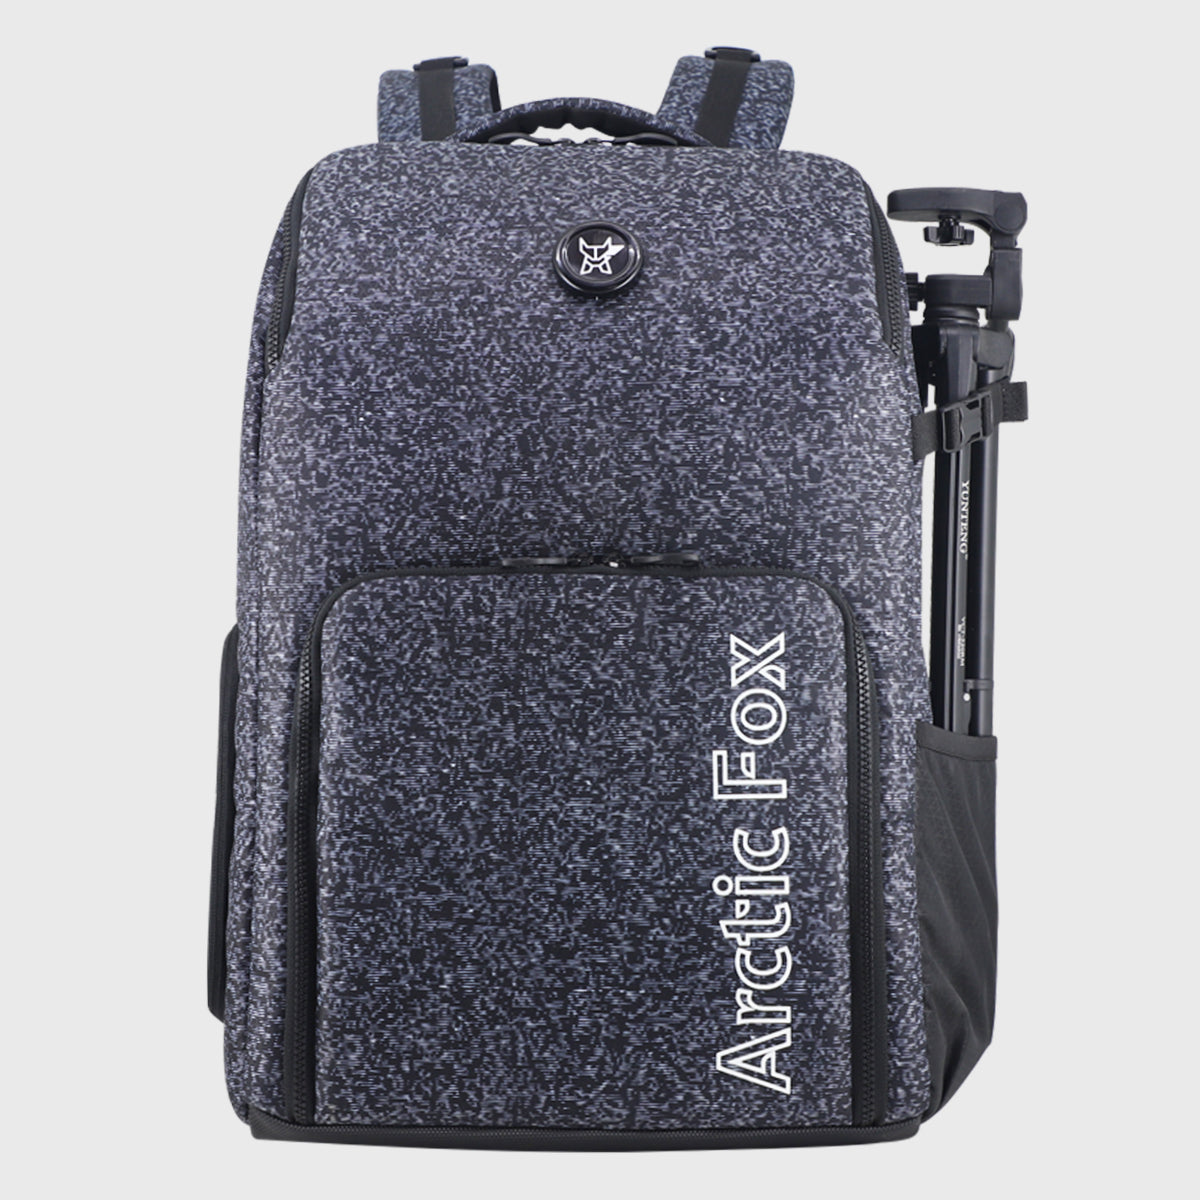 Polaroid Originals Box Camera Bag, Black (6056) : Amazon.ca: Electronics